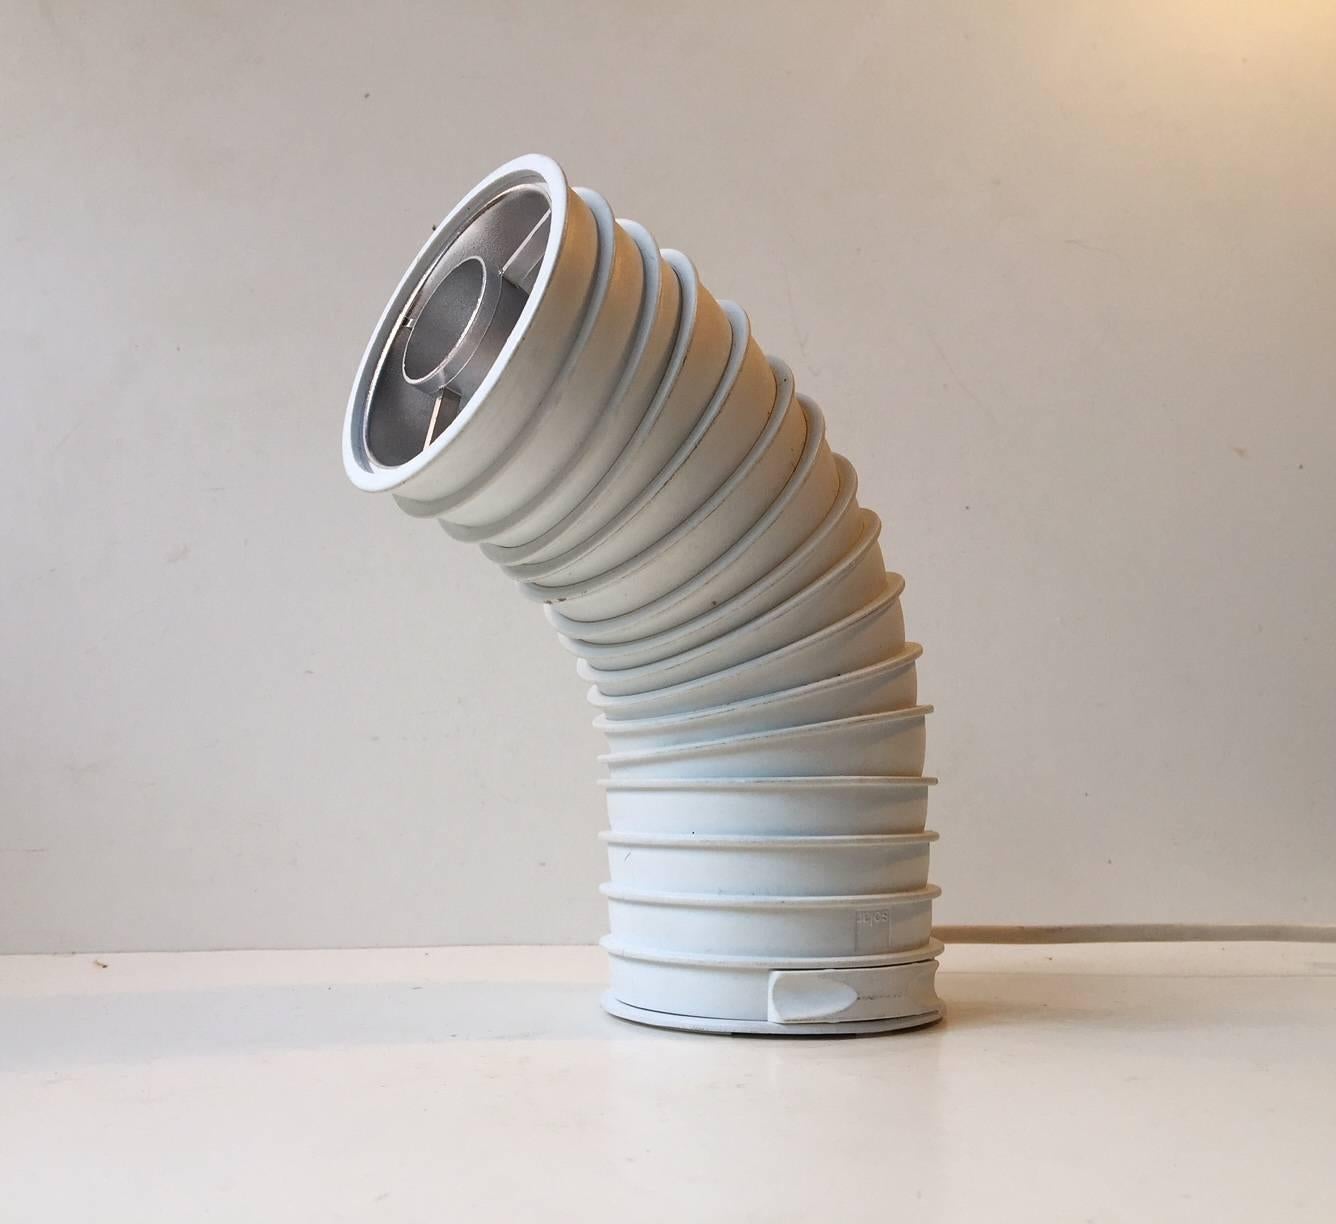 - Lampe de table Spage age
- En forme de ver, de chenille ou de tuyau industriel
- Conçu par l'architecte danois Ole Pless-Jørgensen
- Fabriqué par Nordisk Solar au Danemark dans les années 1980
- Comprend un interrupteur caché sur le fond
-